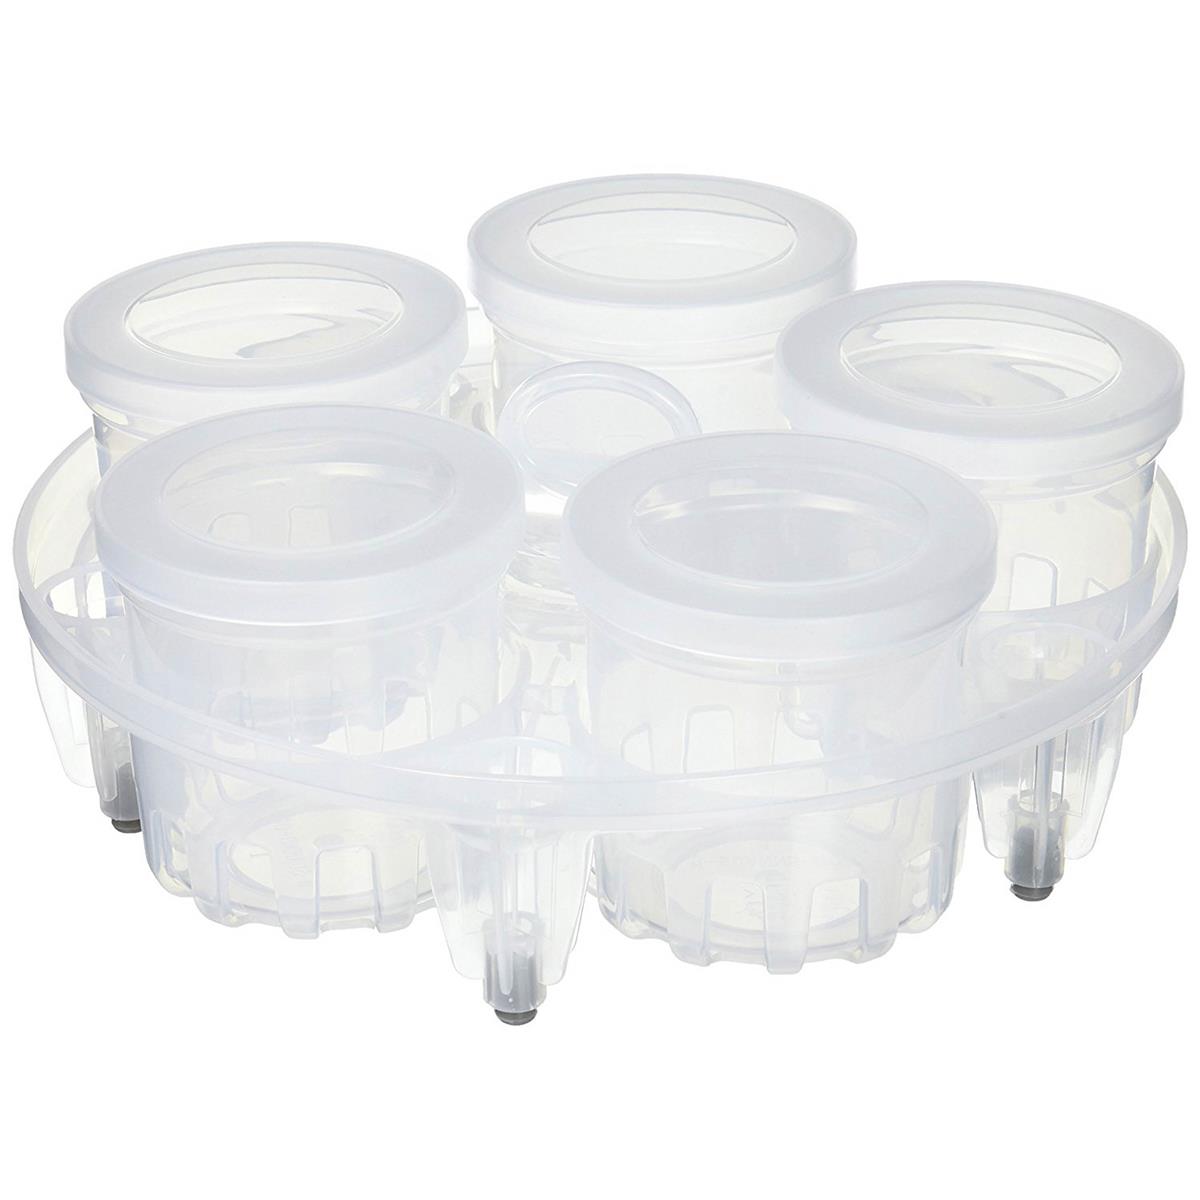 ® - set yogurt / sterilizzatore per modelli da 5,7 e 8 litri